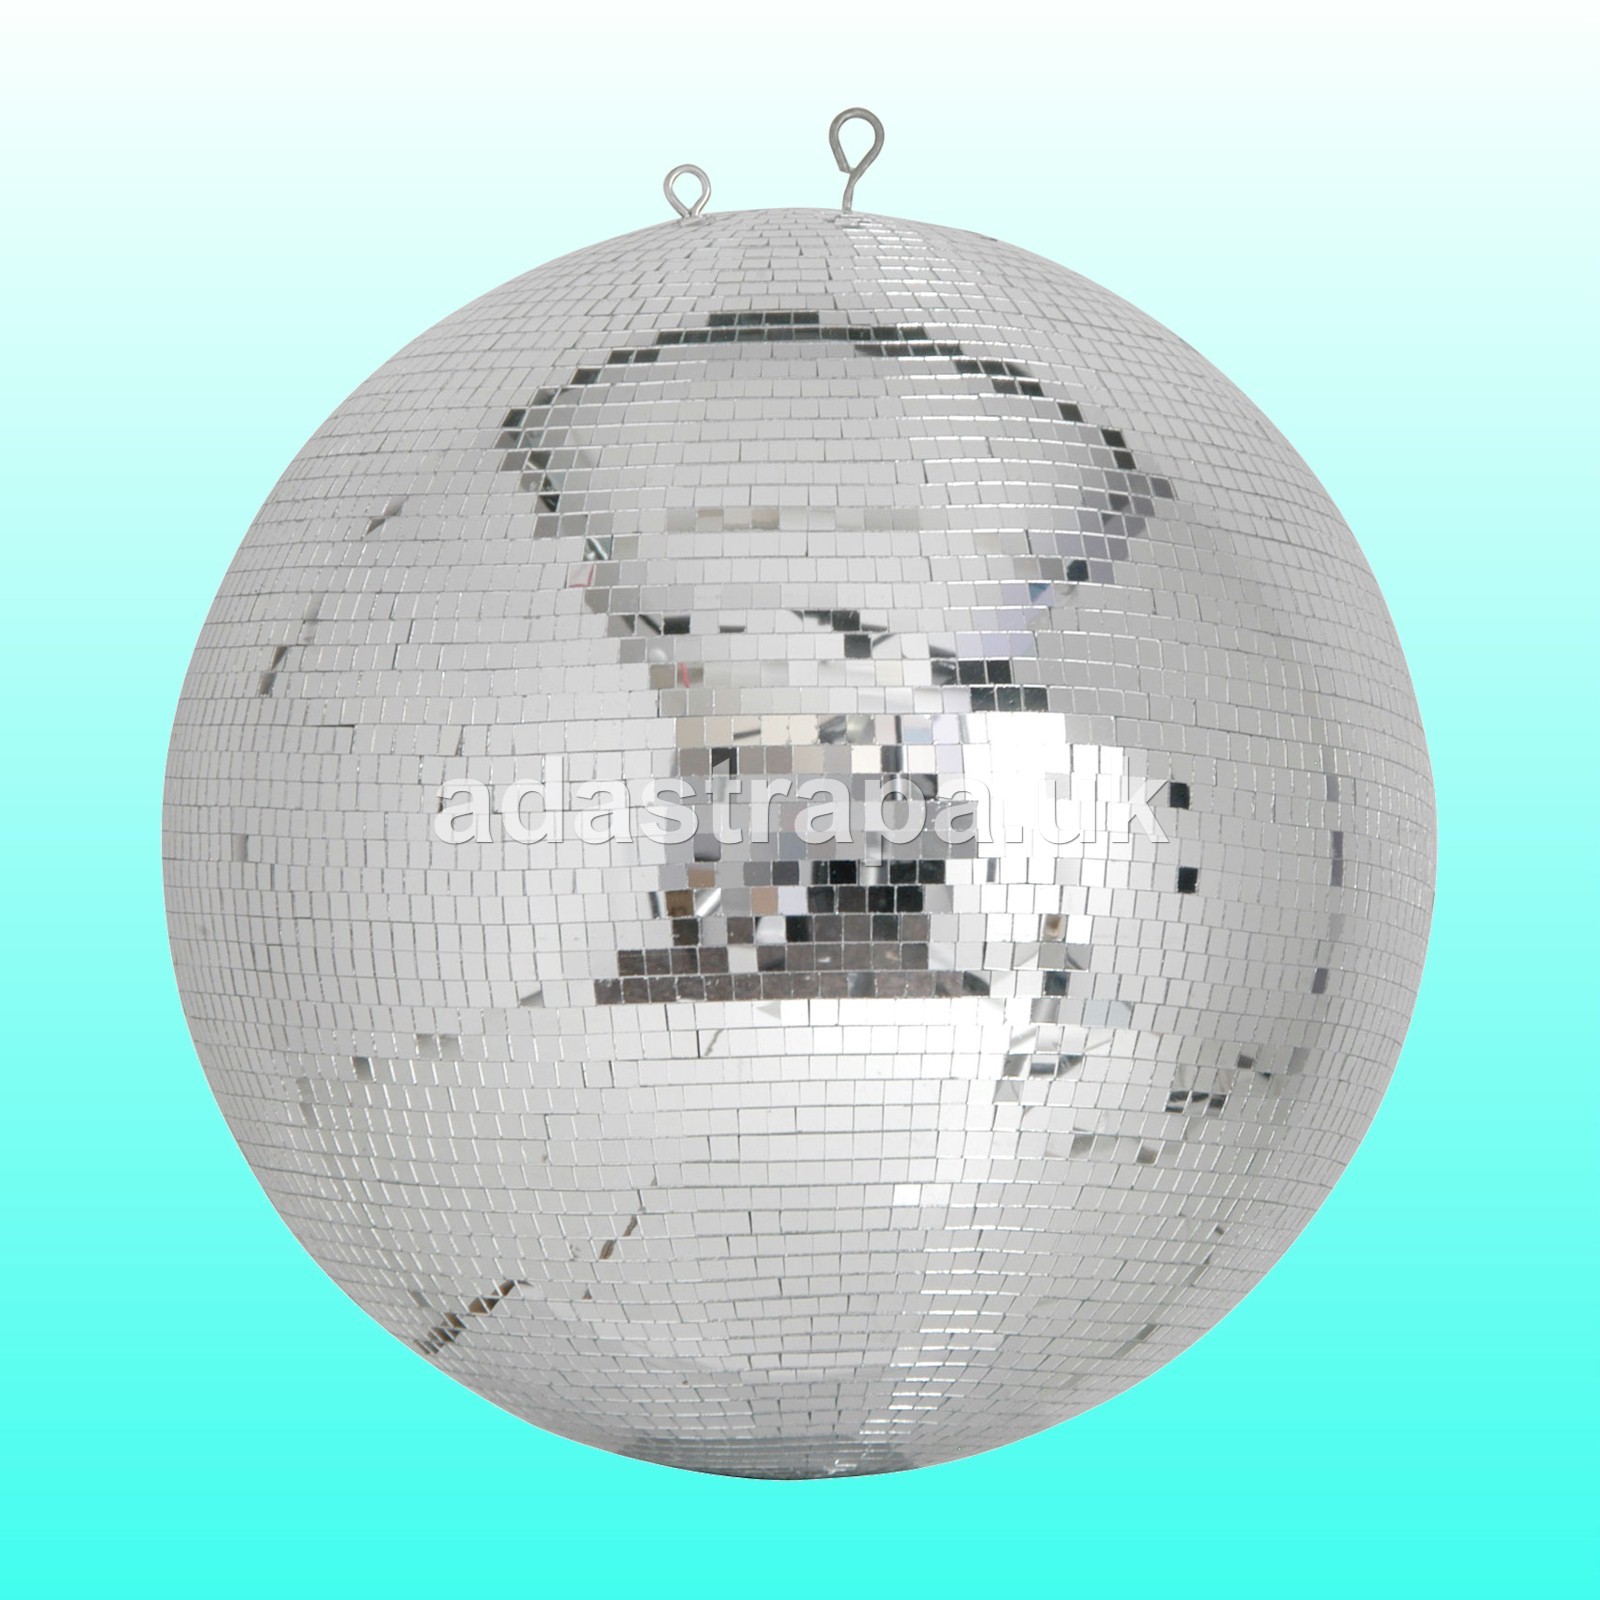 QTX PMB-50 Professional Mirror Ball 7mm x 7mm Tiles 500mm∅  - 151.414UK